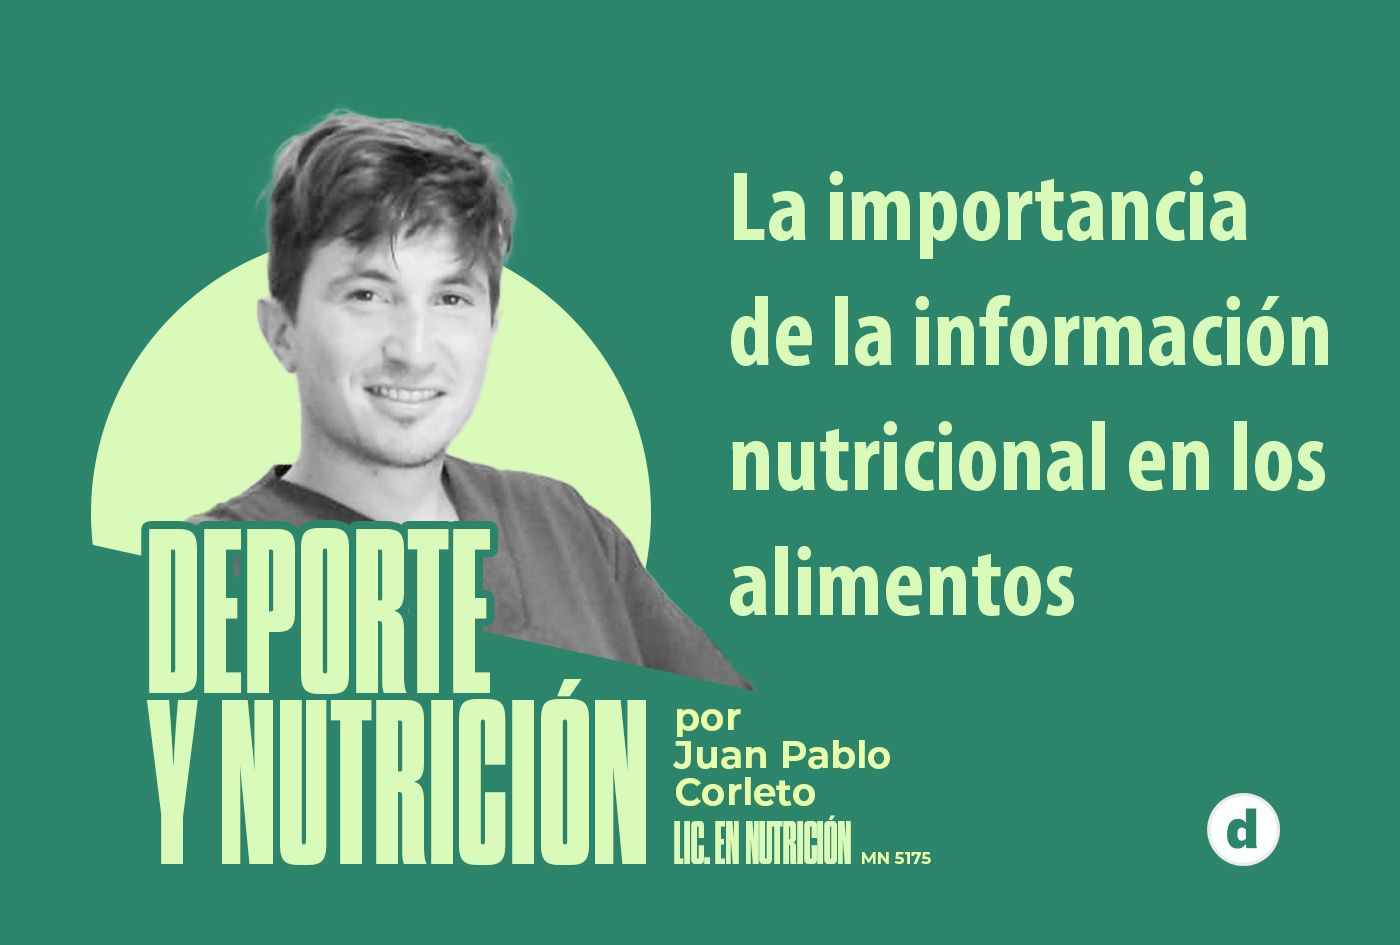 La columna del nutricionista Juan Pablo Corleto: “La importancia de la información nutricional en los alimentos”